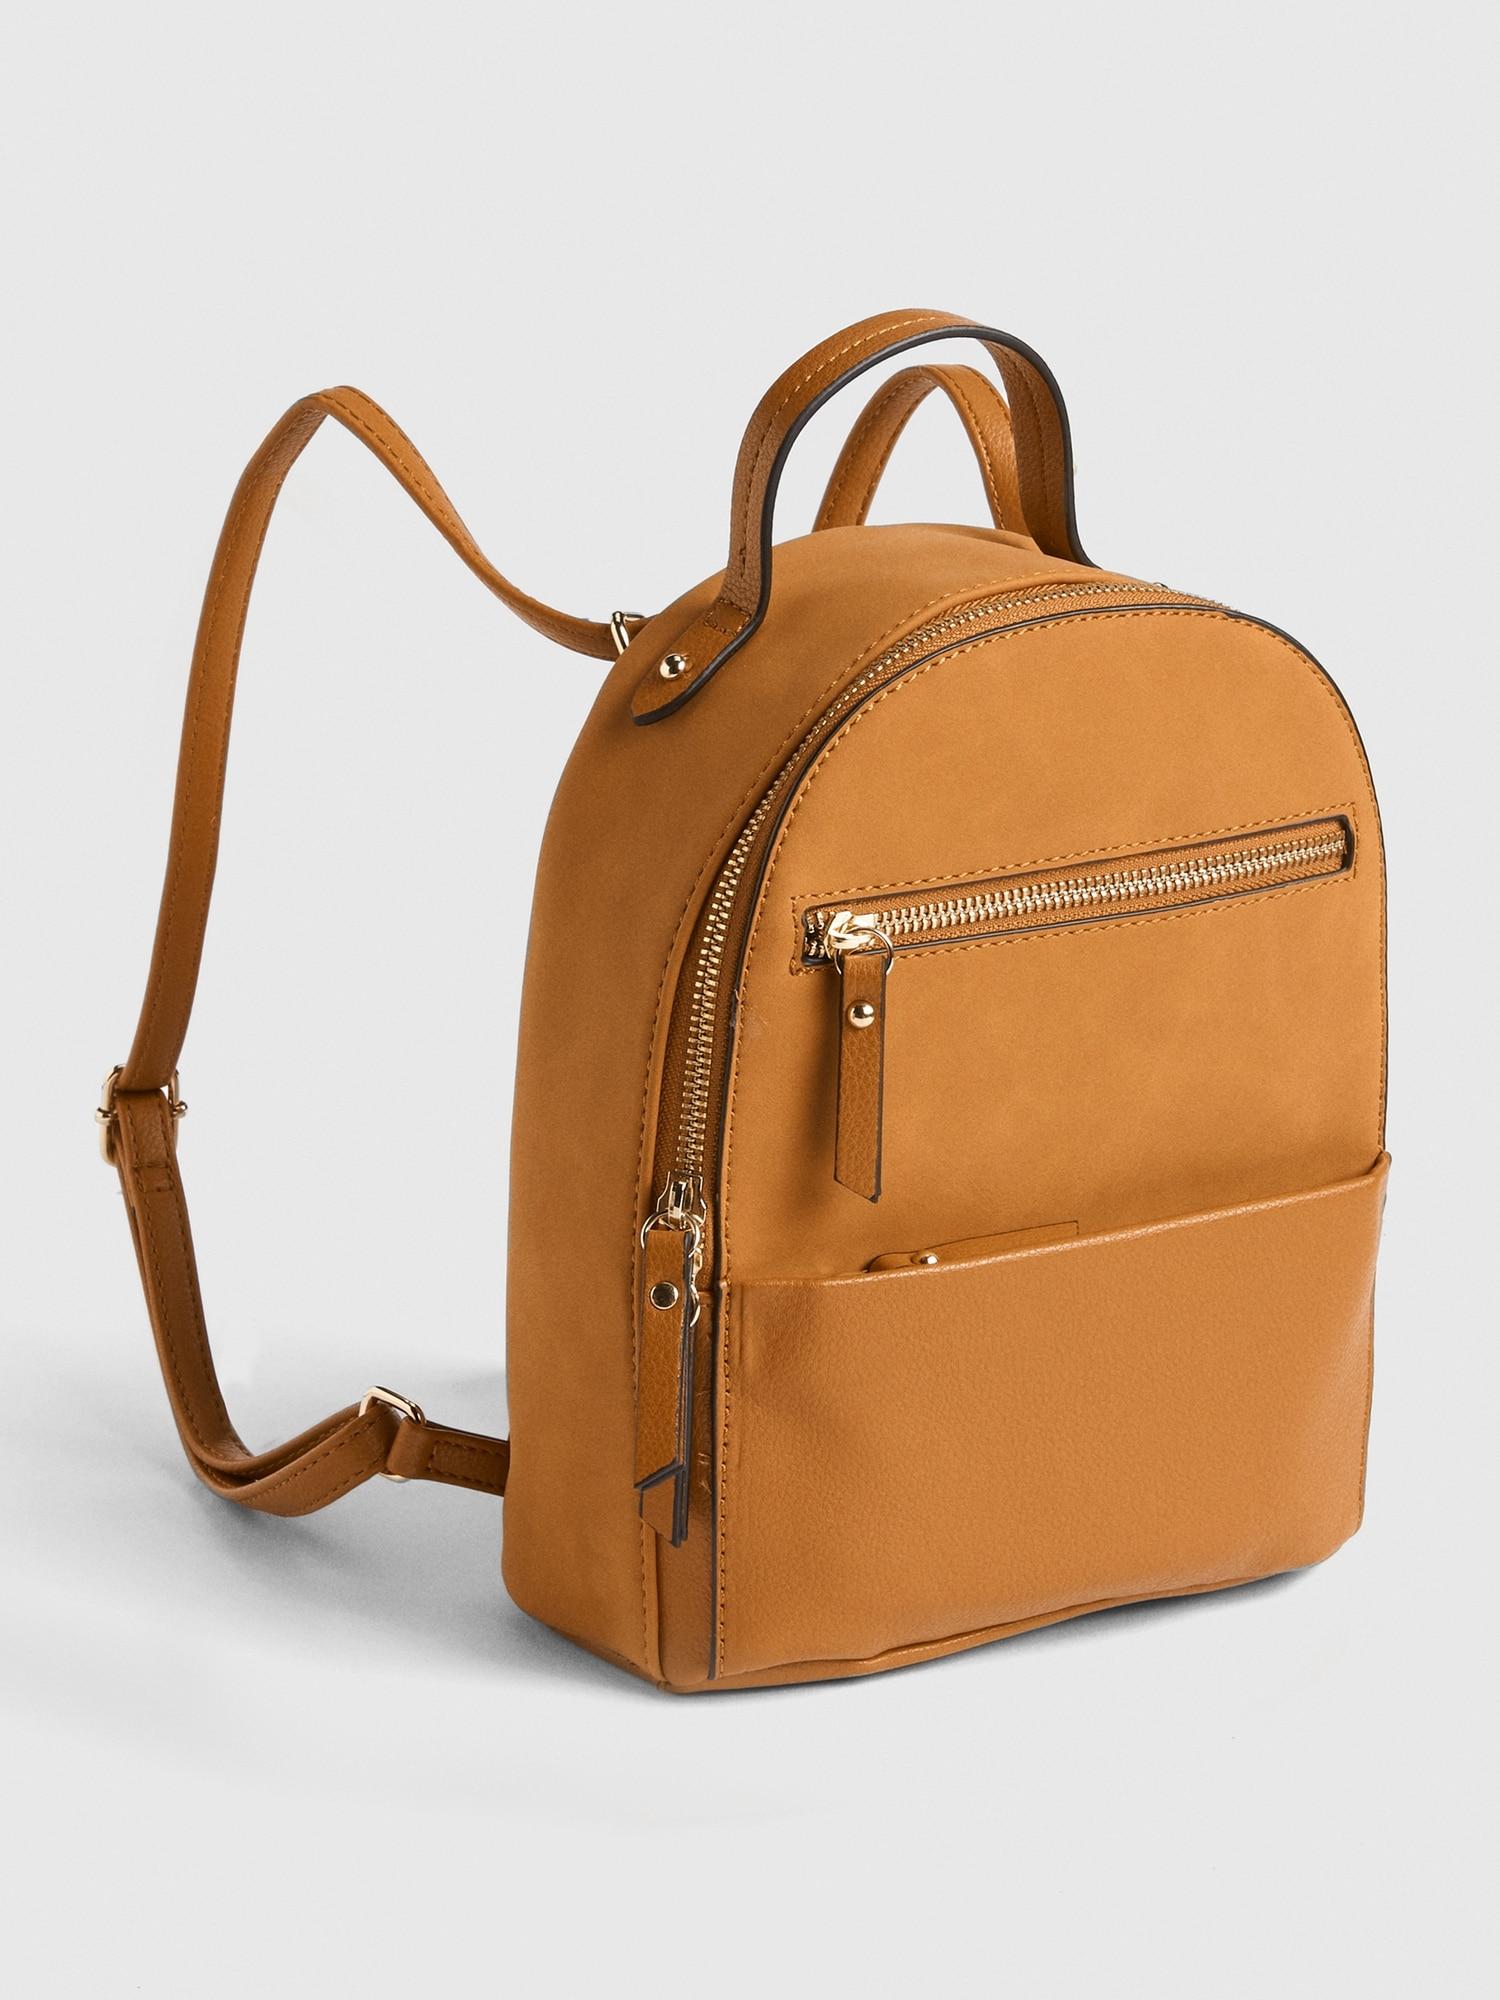 Gap Convertible Modern Backpack in Cognac (Brown) - Lyst